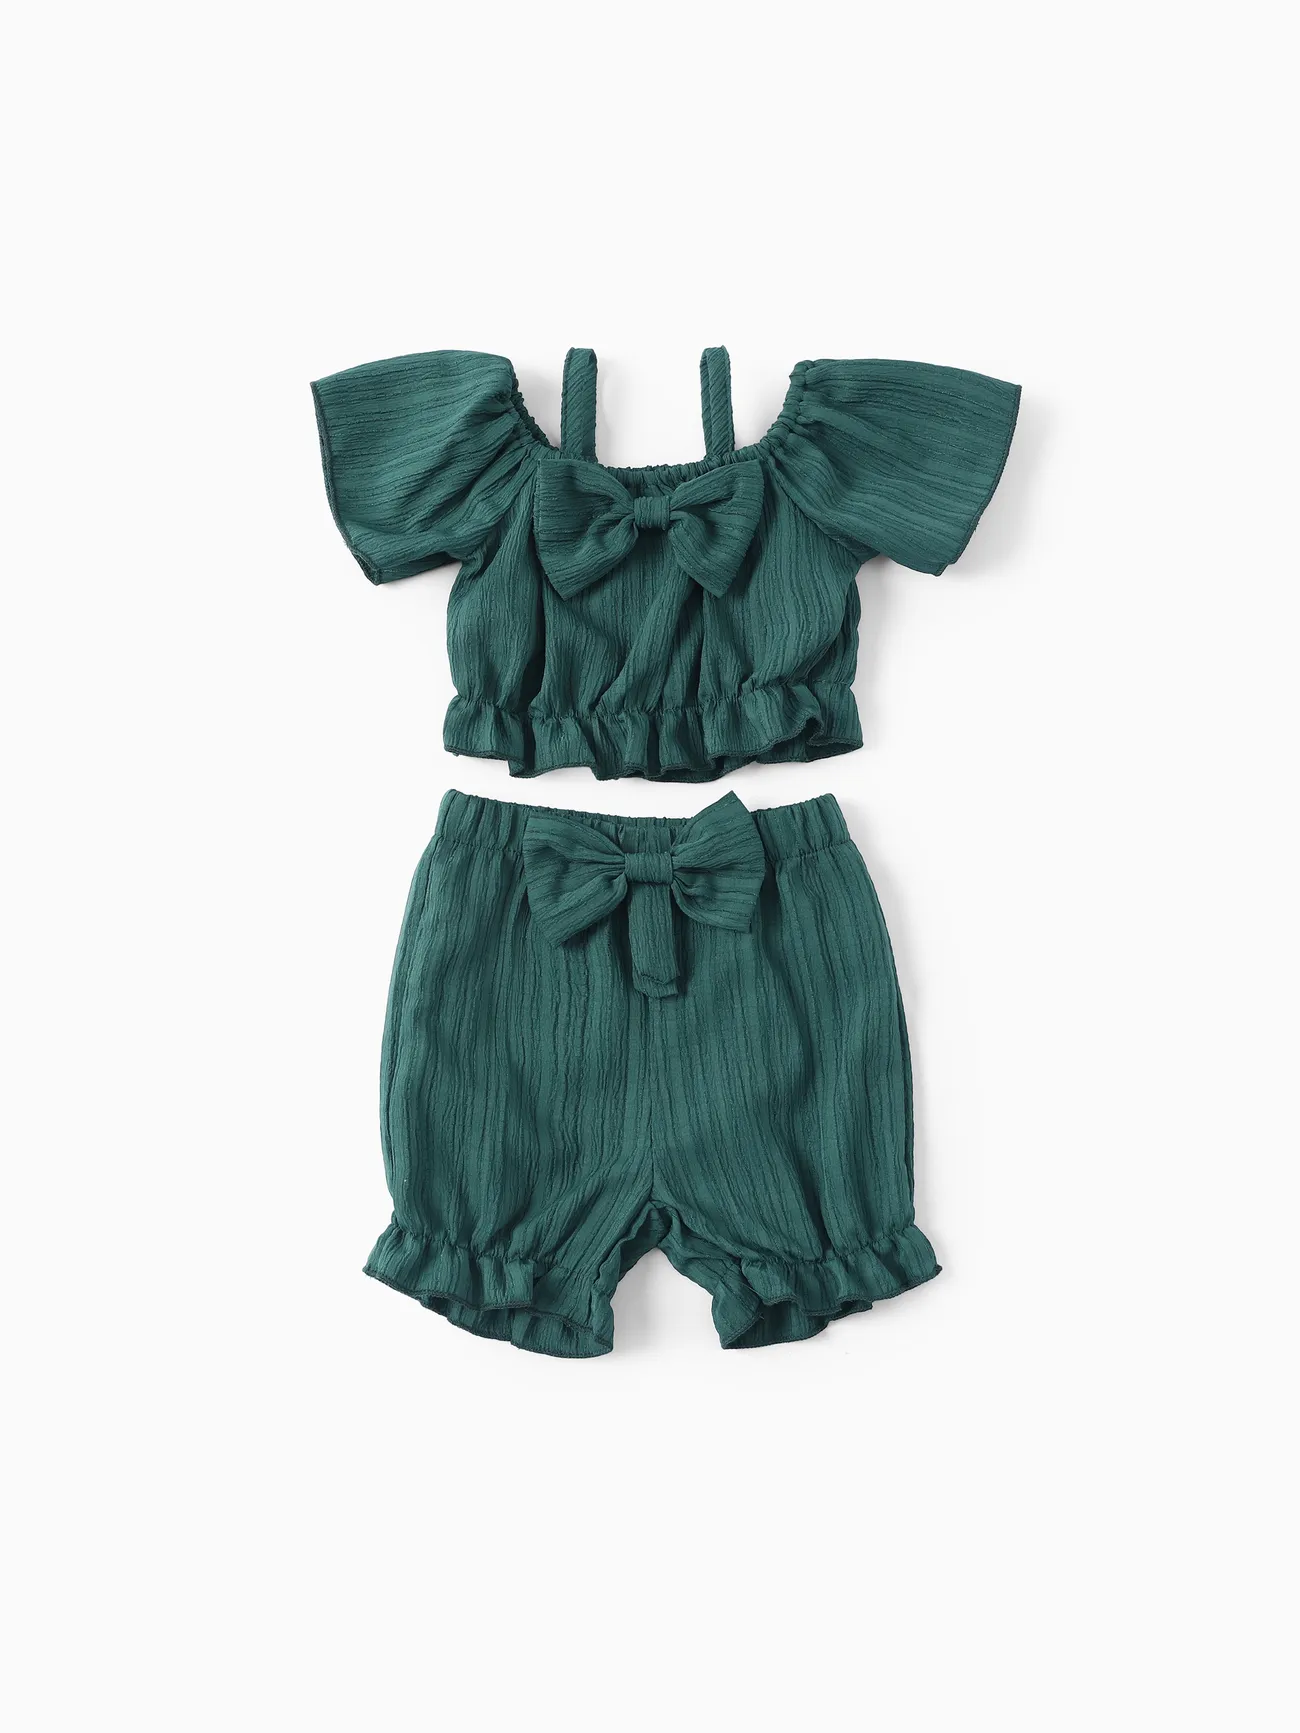 Sweet Off-Shoulder Baby Girl 2pcs Polyester Set Green big image 1